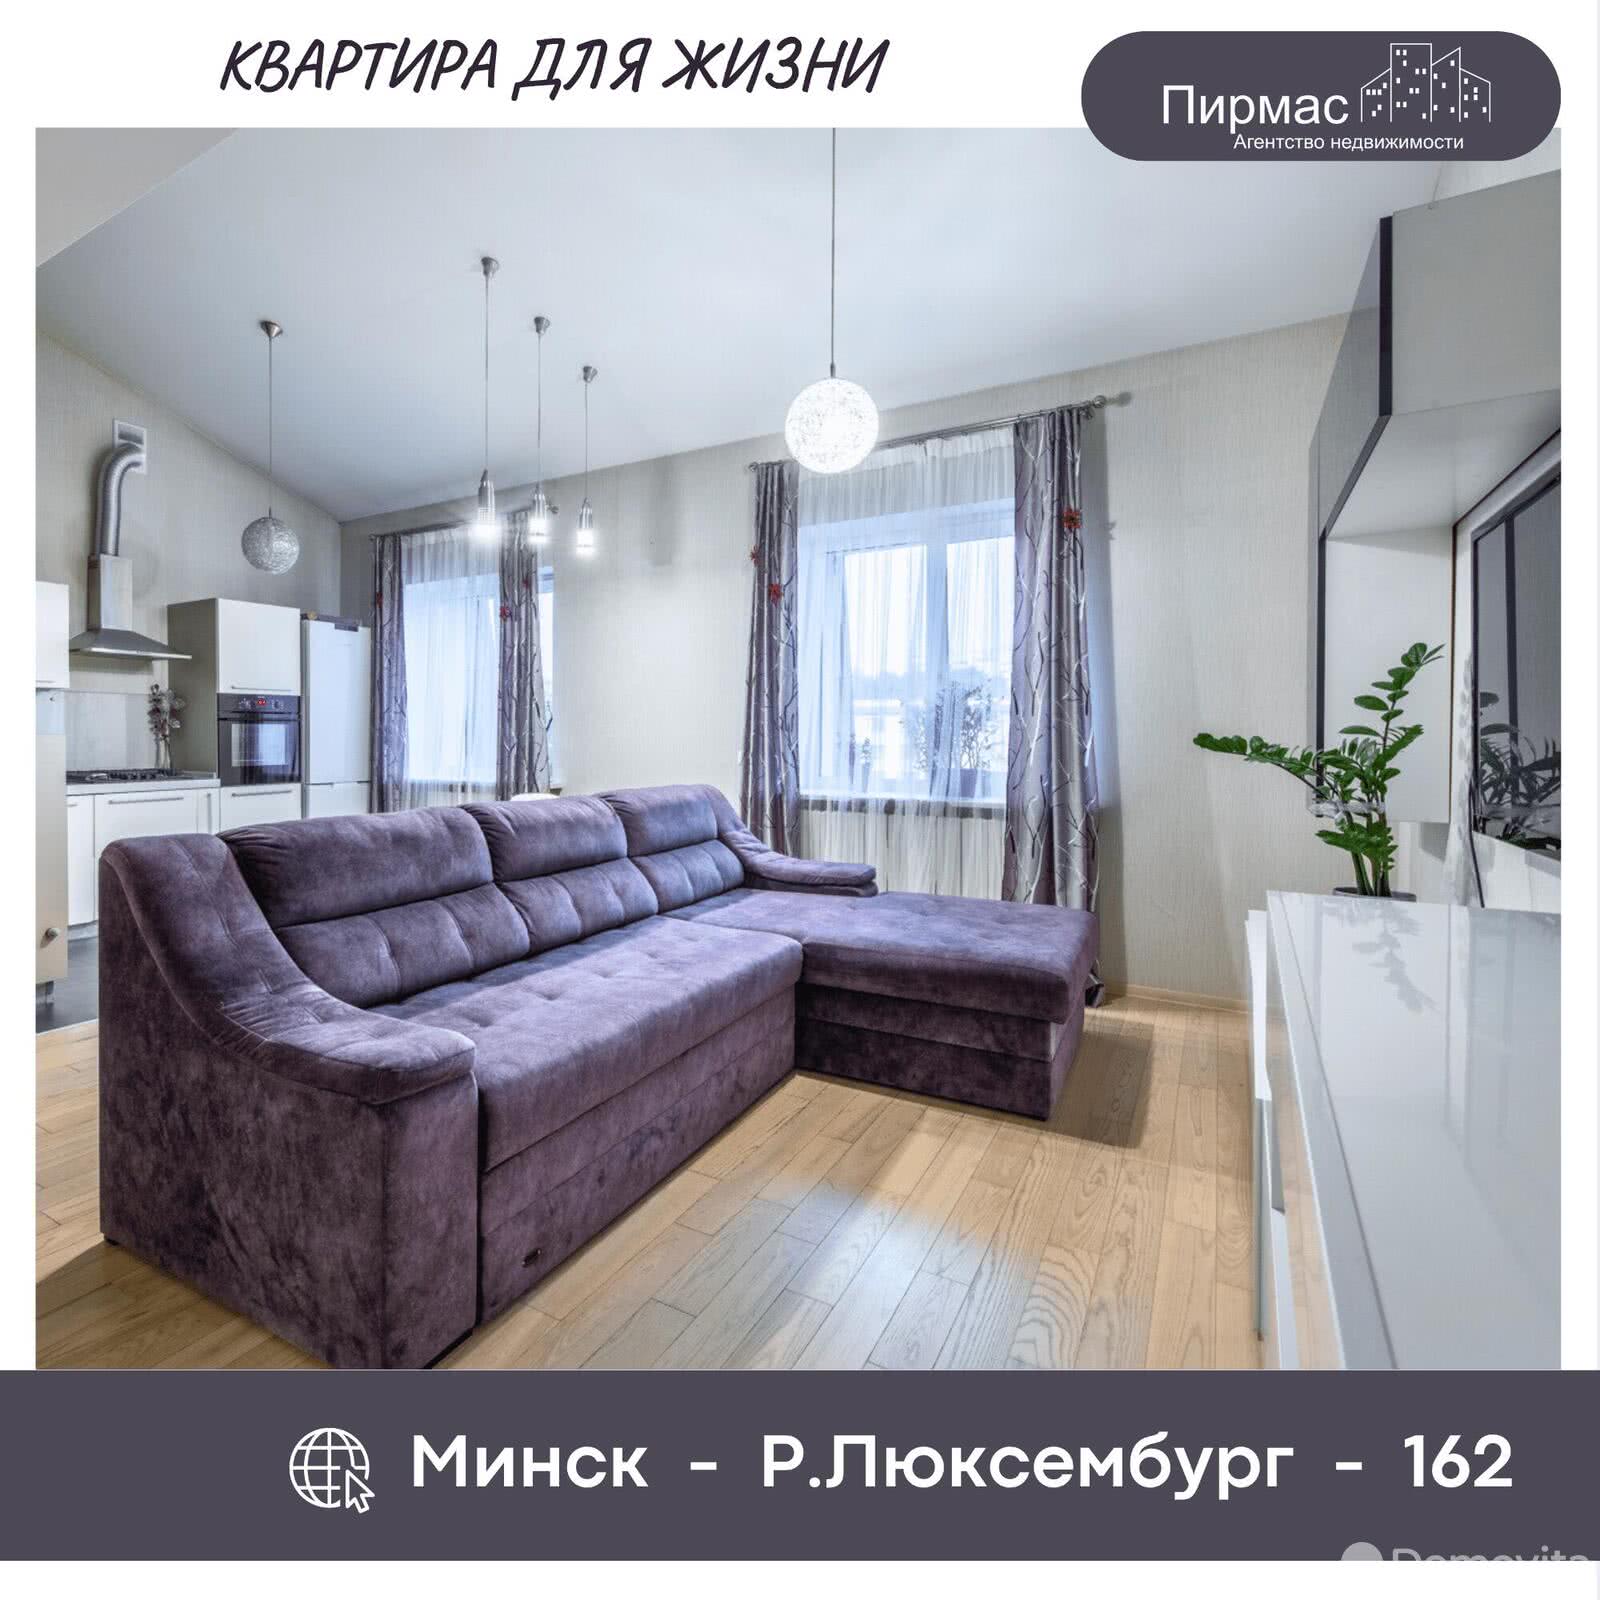 Цена продажи квартиры, Минск, ул. Розы Люксембург, д. 162